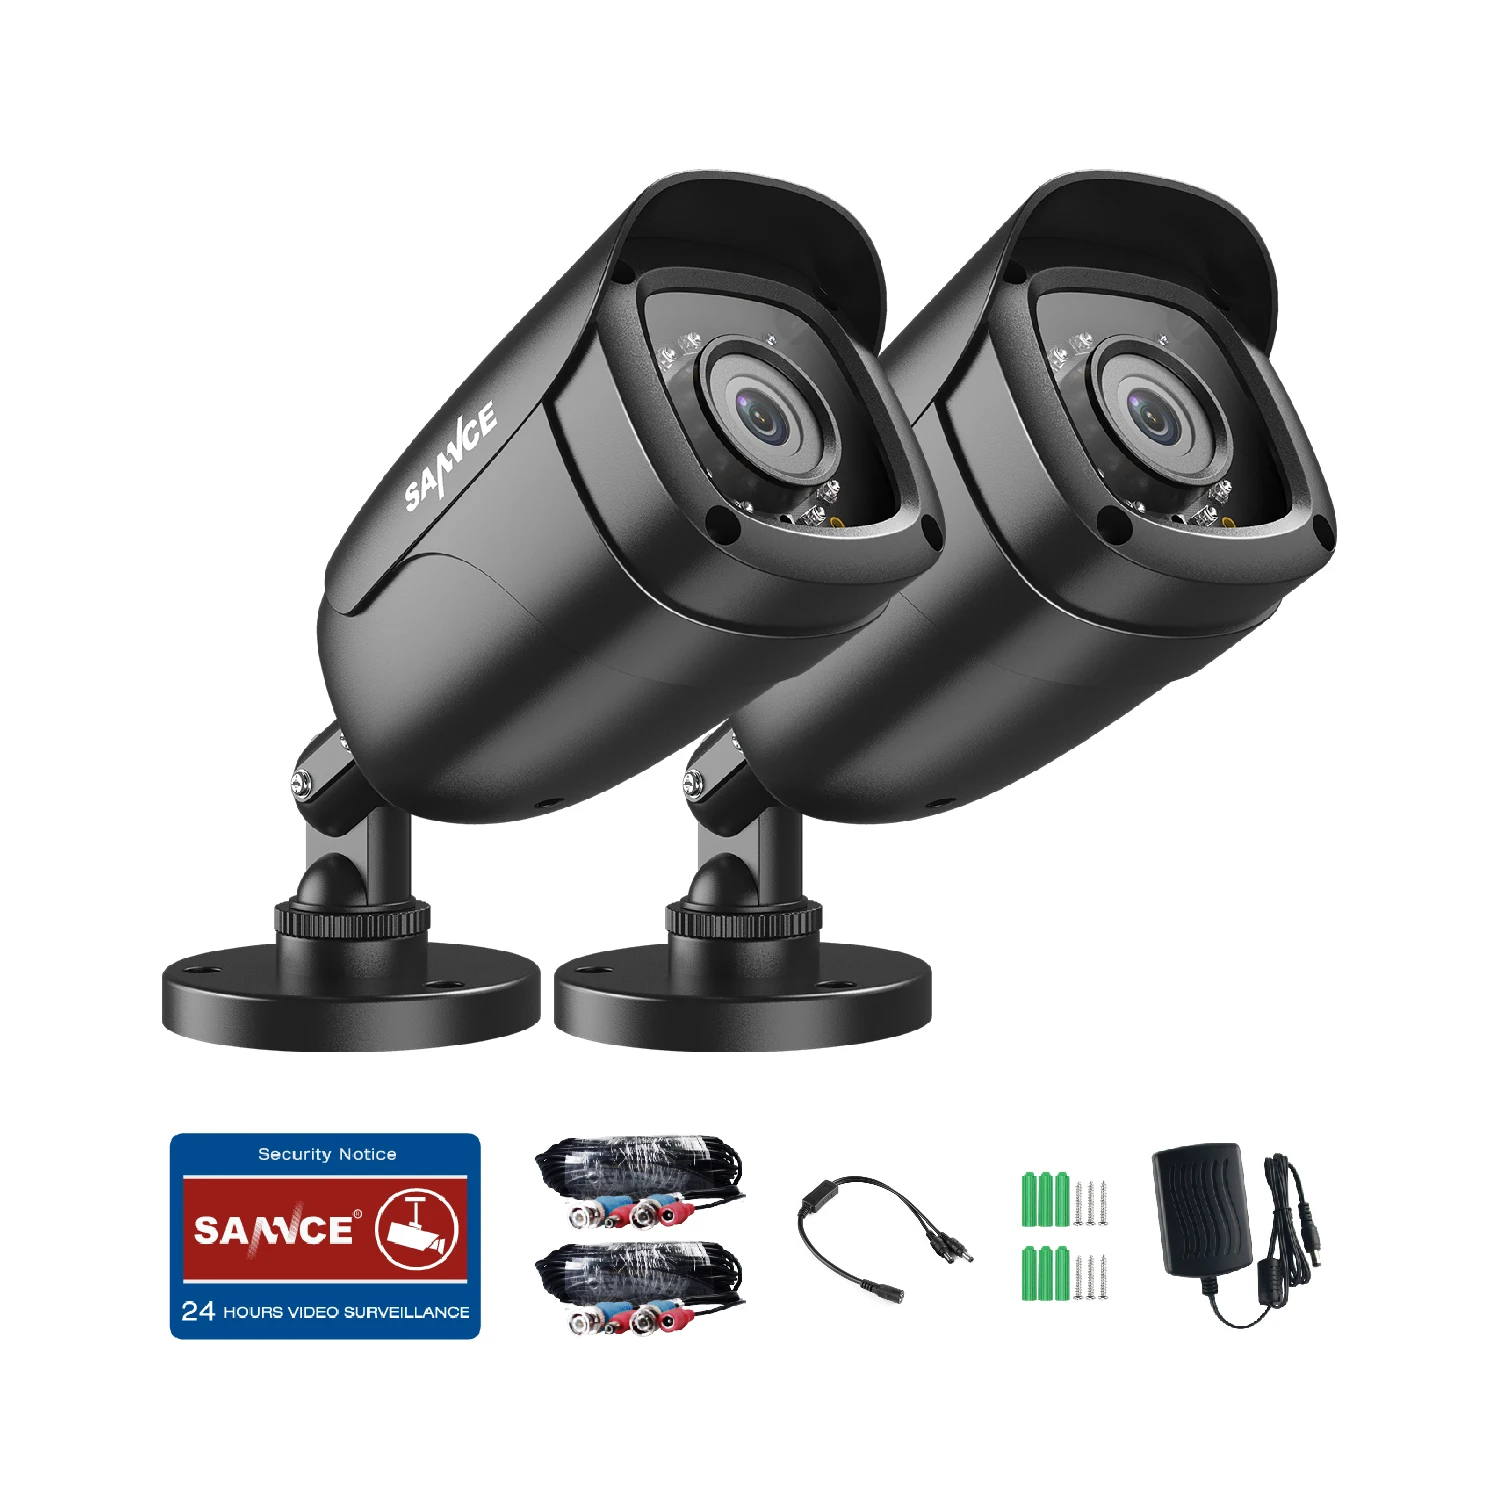 SANNCE 2 шт TVI 1080P HD 2.0MP Высокое разрешение CCTV камеры безопасности H.264 водонепроницаемые внутренние/уличные Камеры Видеонаблюдения Набор